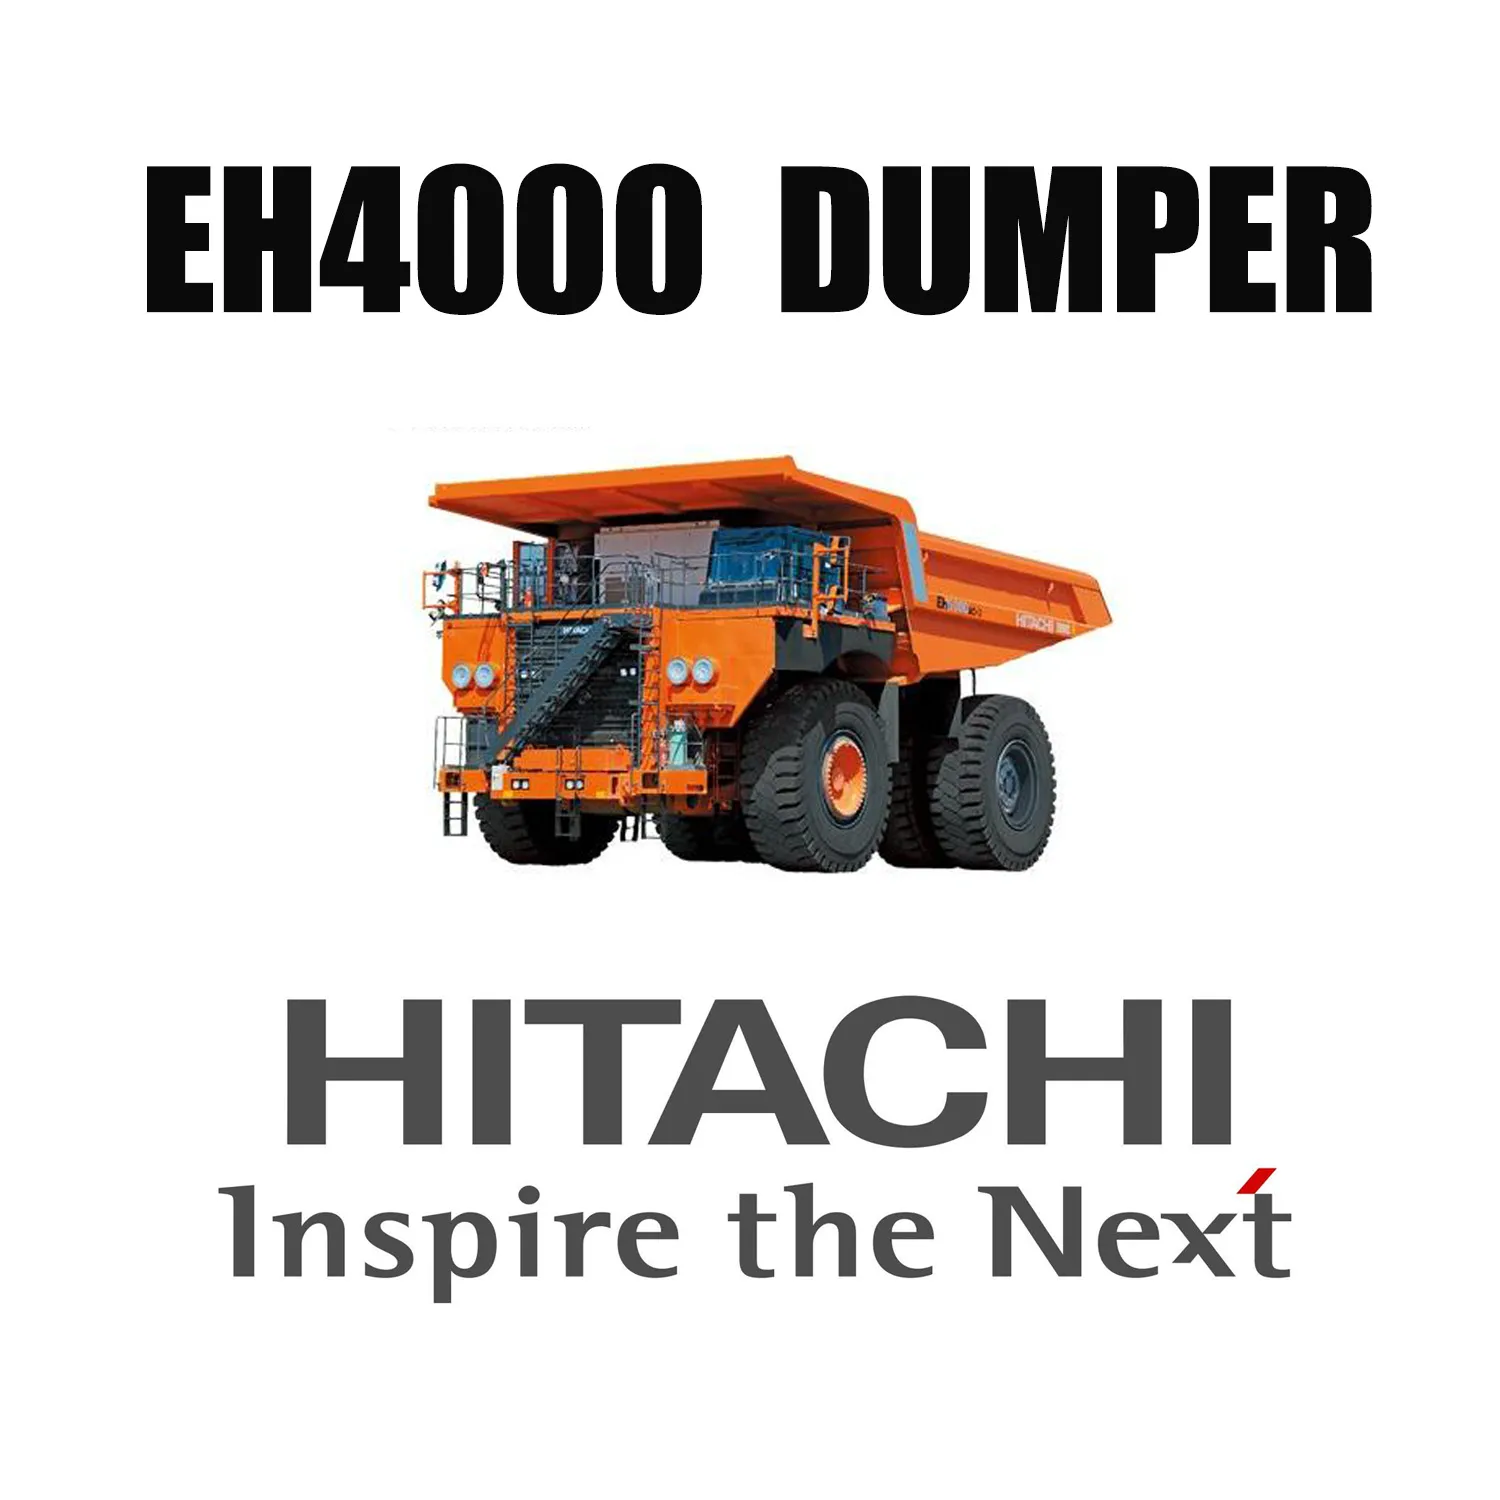 รถดั๊มพ์แบบแข็ง HITACHI EH4000 พร้อมยางรถขุดดิน 46/90R57